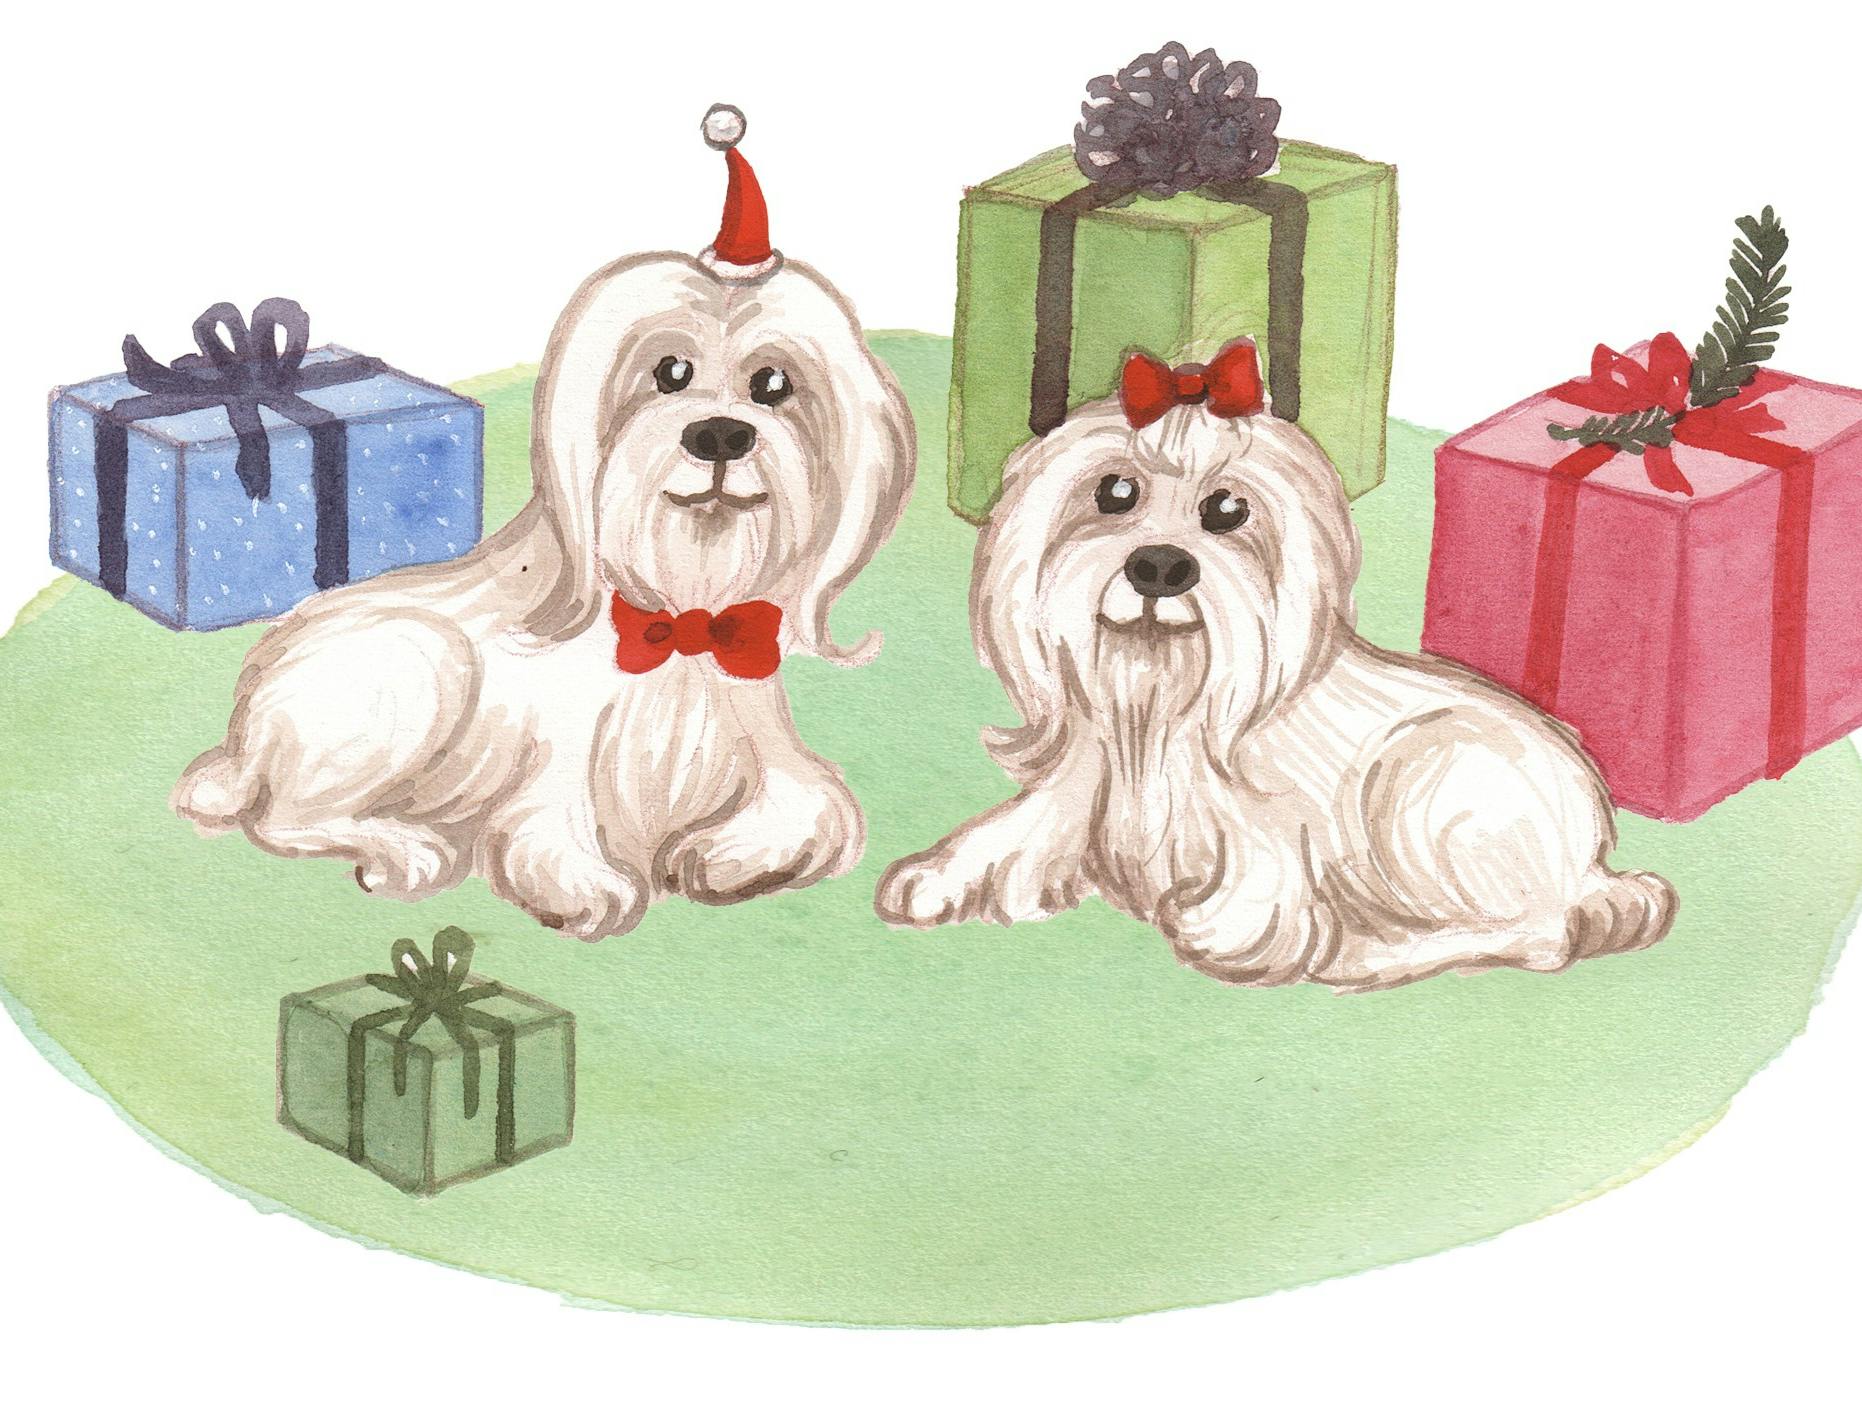 To små hunde og nogle julegaver